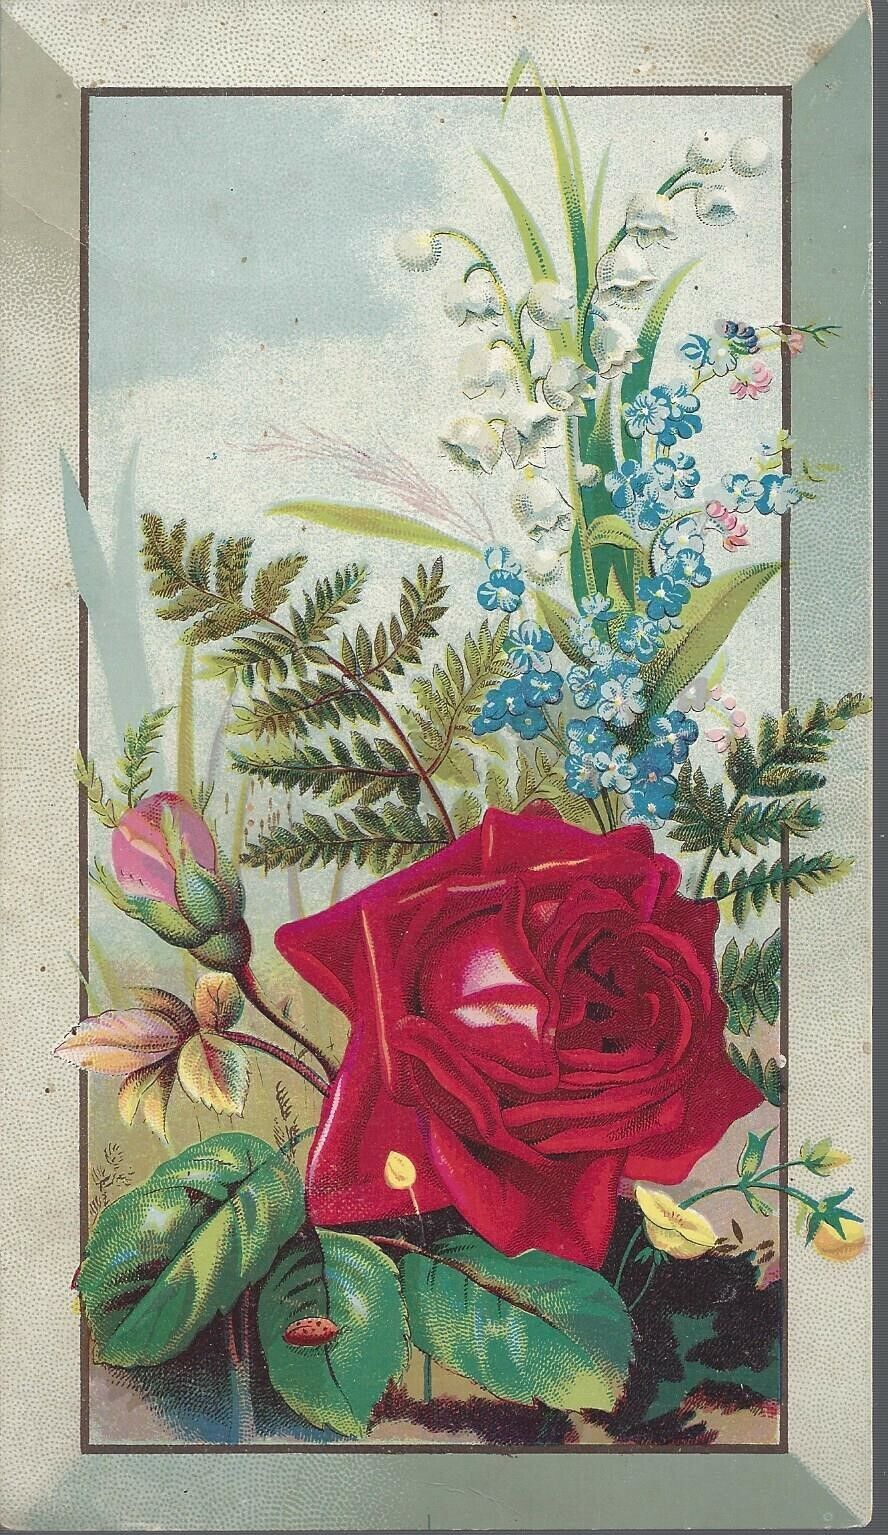 Vintage Fleischmann & CO Compressed Yeast Advertising Card